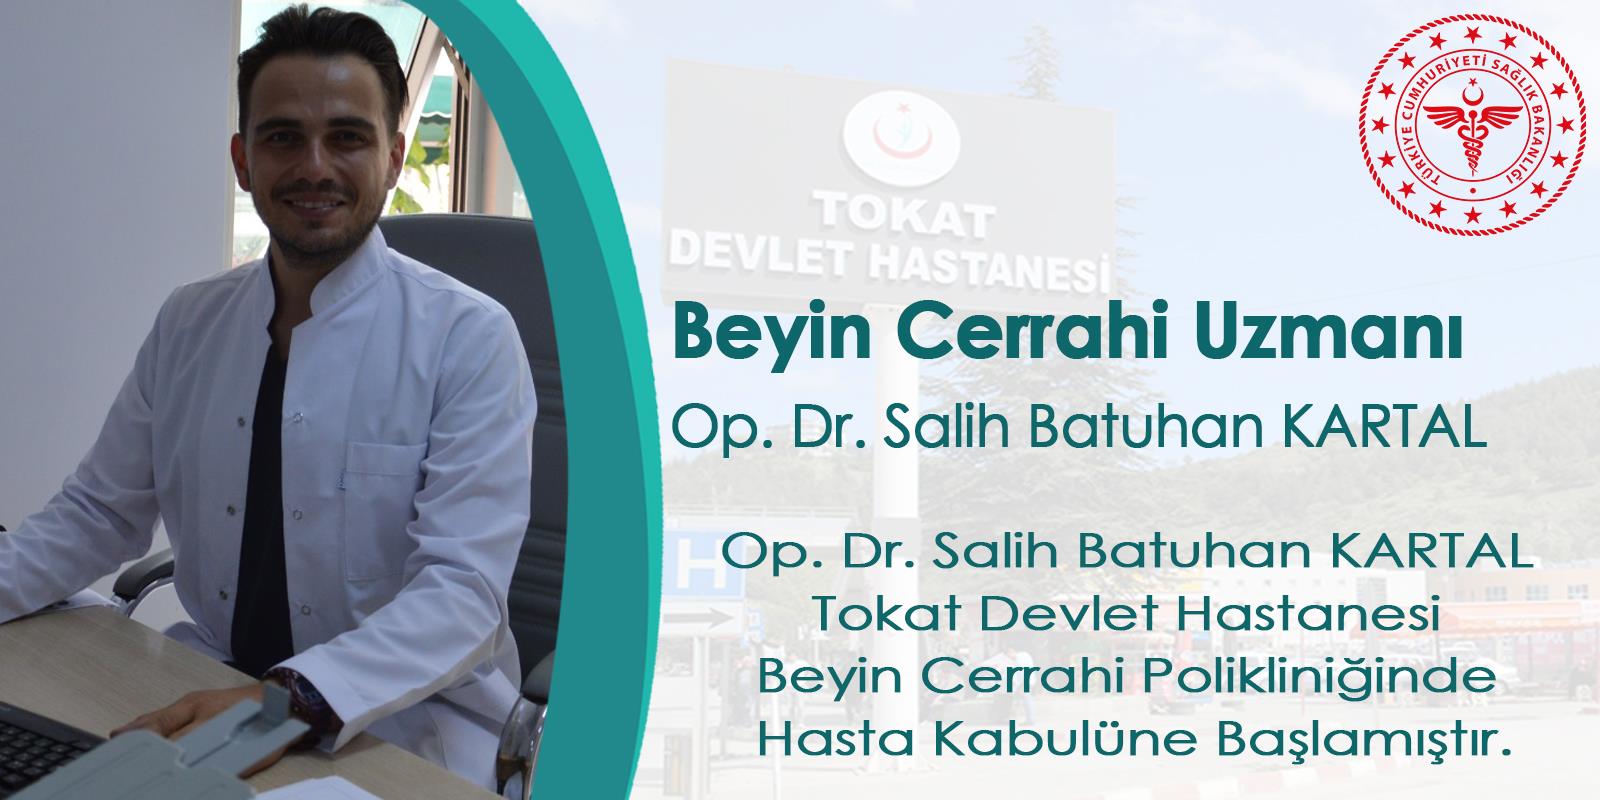 Beyin Cerrahisi Uzmanı Op. Dr. Salih Batuhan KARTAL hastanemizde hizmet vermeye başlamıştır.